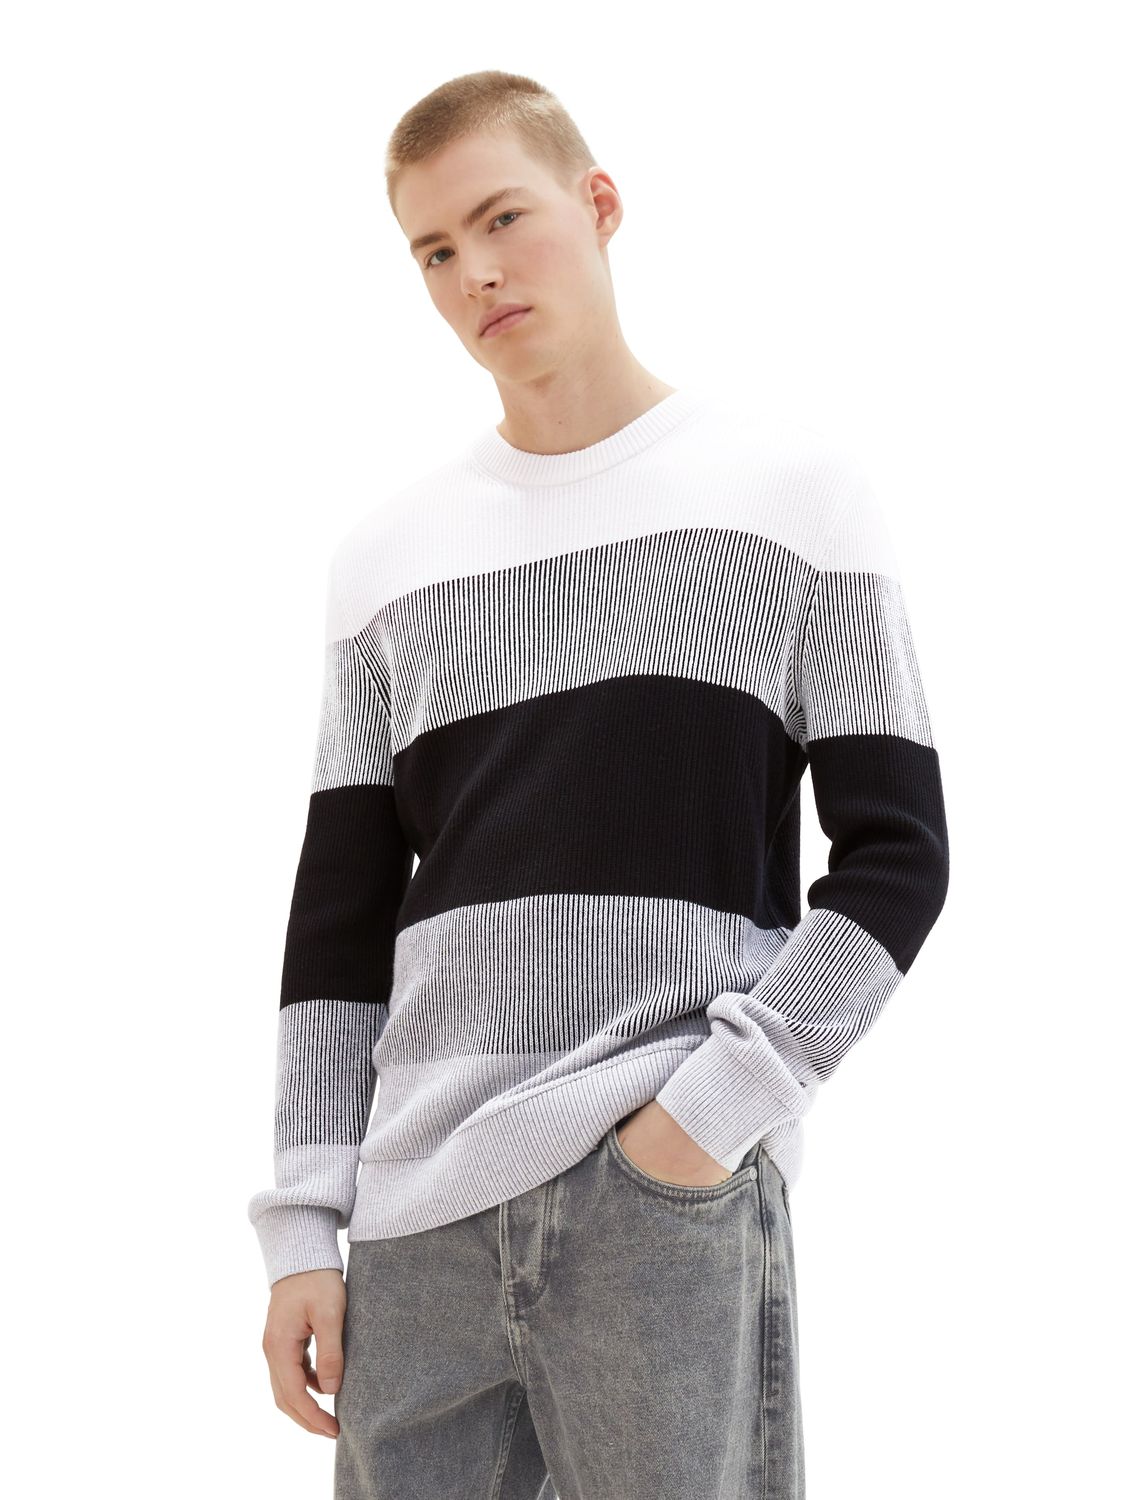 Пуловер TOM TAILOR Denim STRUCTURED COLORBLOCK, разноцветный пуловер tom tailor denim structured doublelayer серый